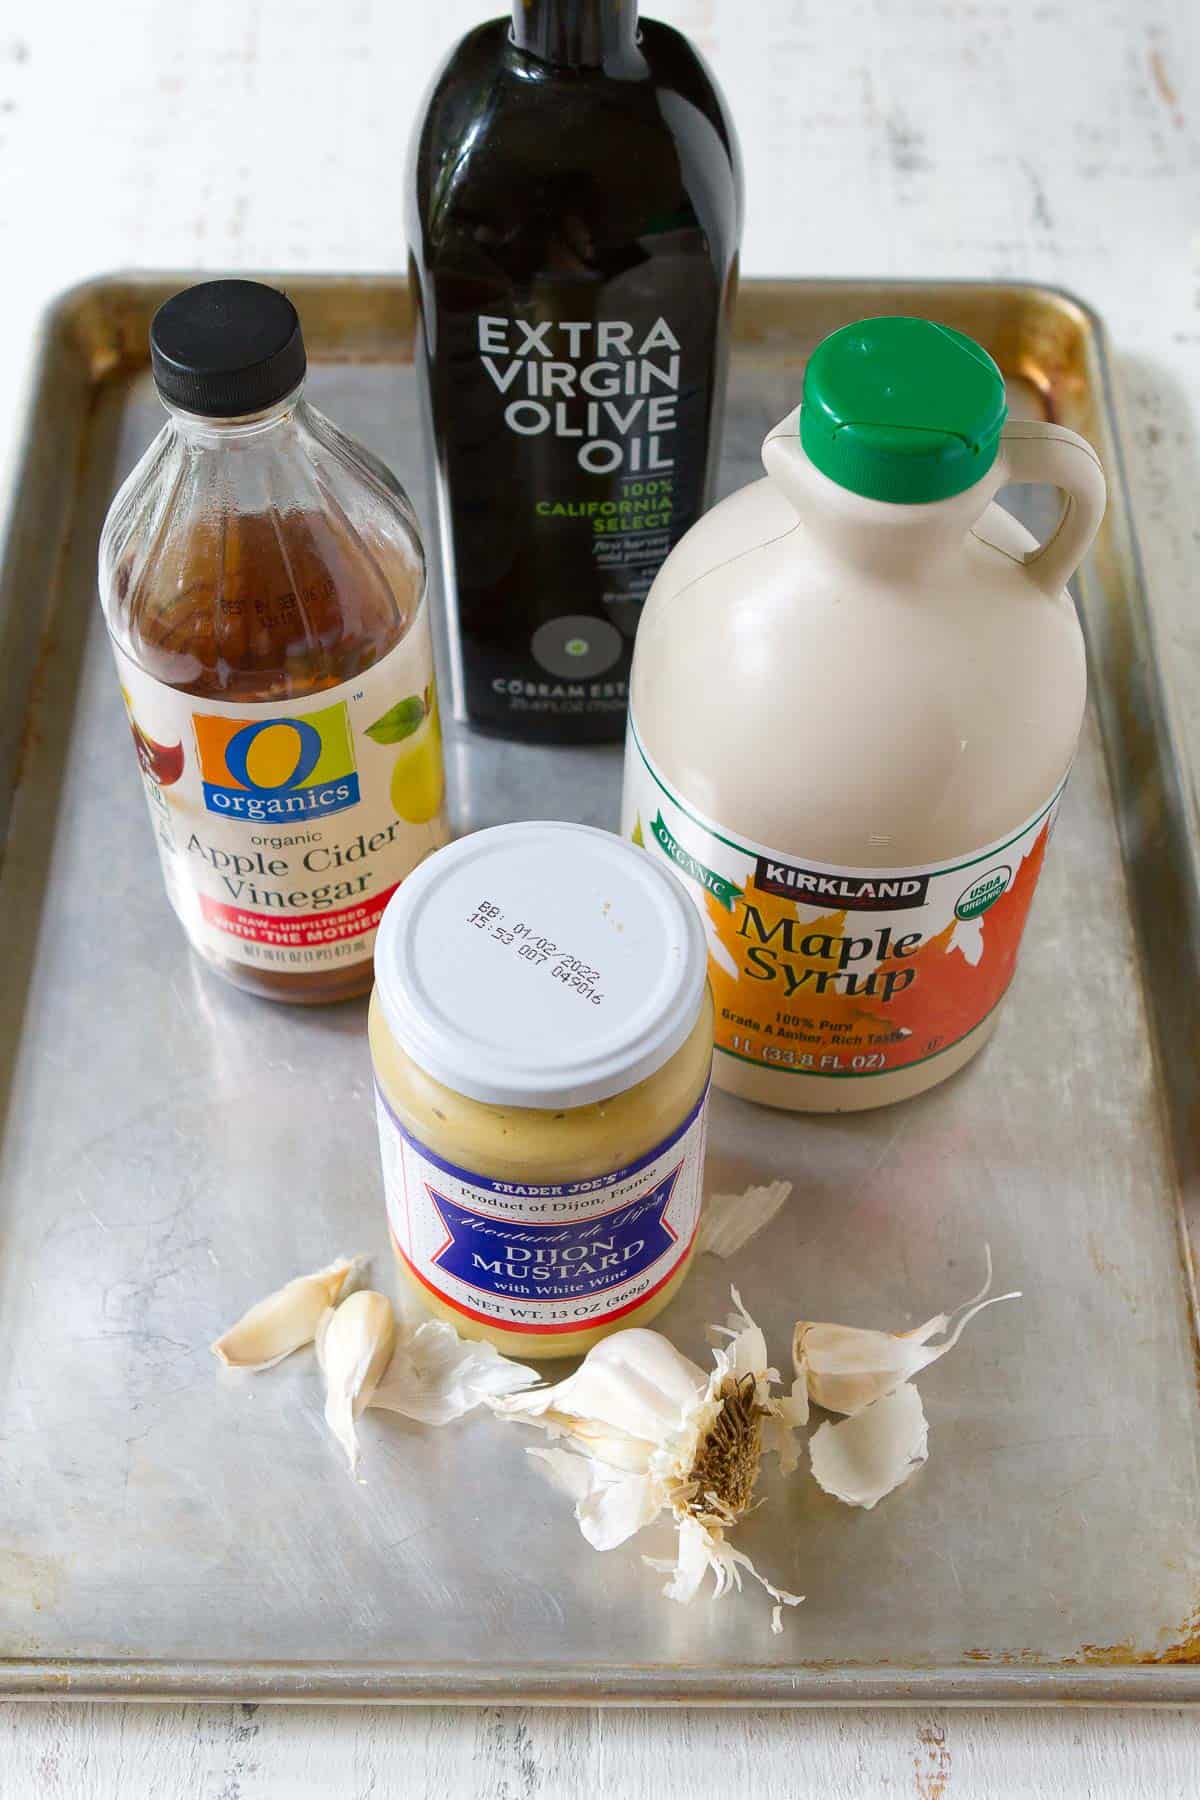 Ingredients for apple cider vinegar salad dressing on a baking sheet.